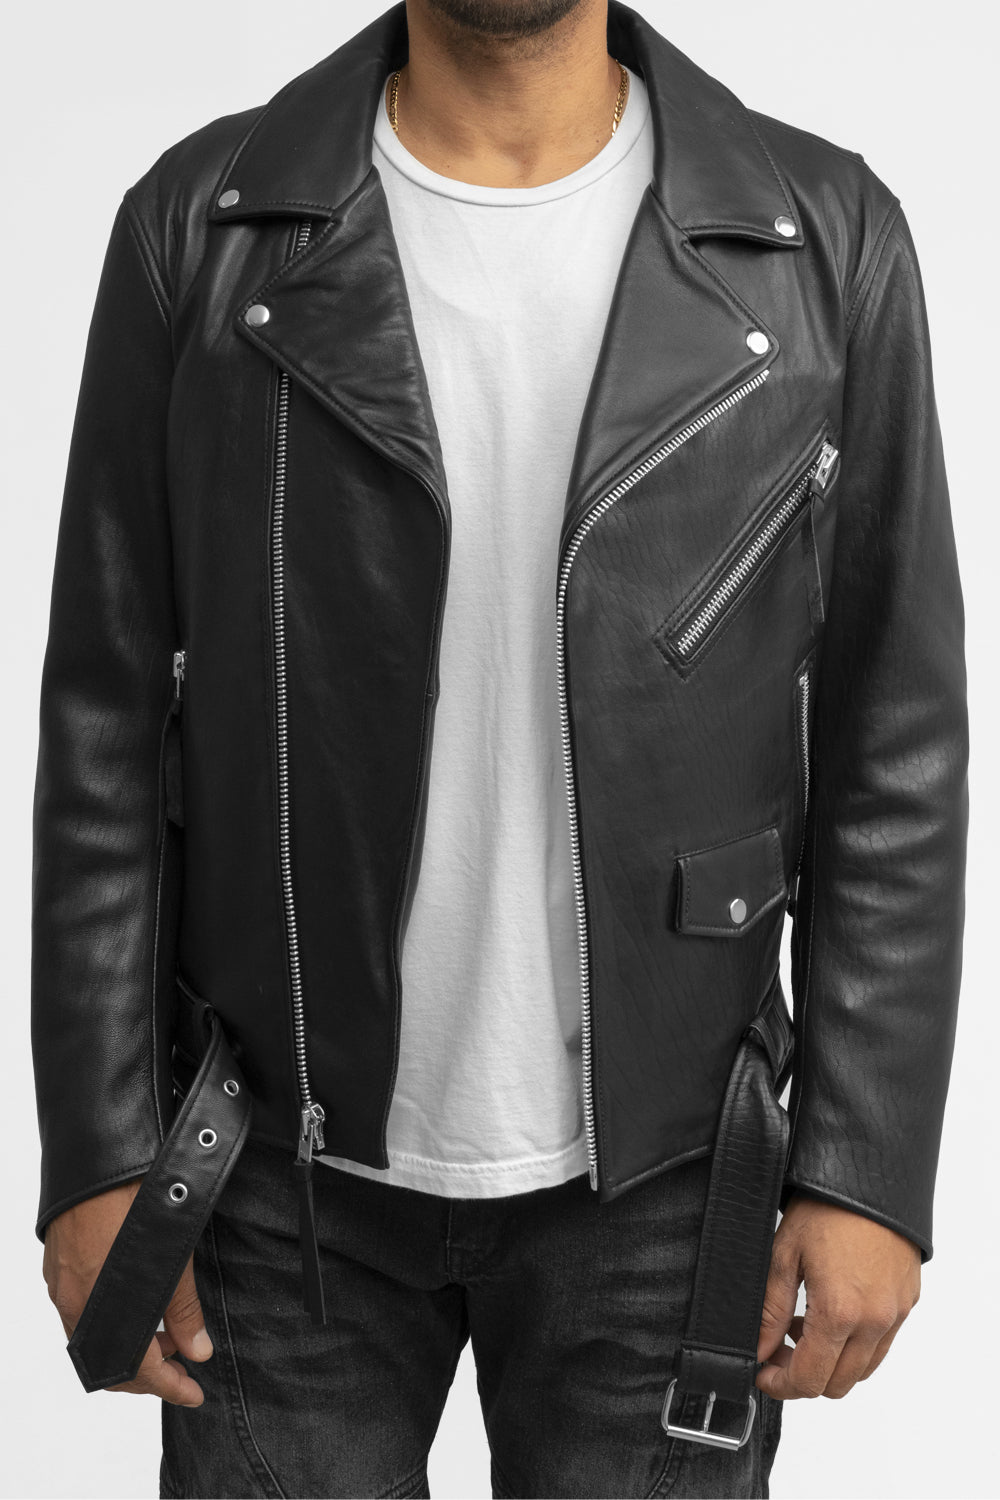 Jay Mens Fashion Leather Jacket Men's New Zealand Lambskin Jacket Whet Blu NYC   